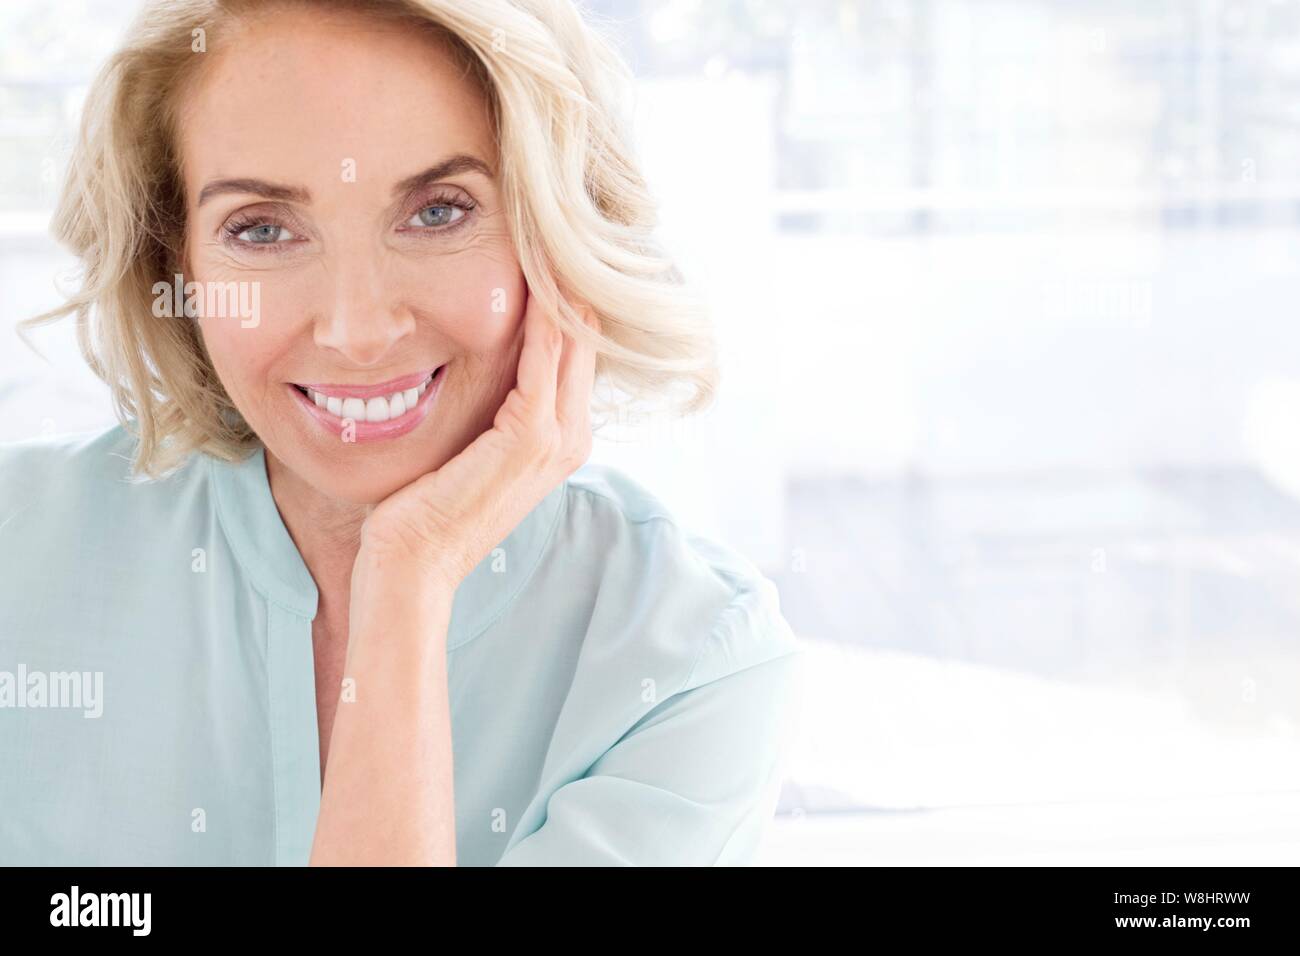 Mature woman smiling towards camera. Stock Photo